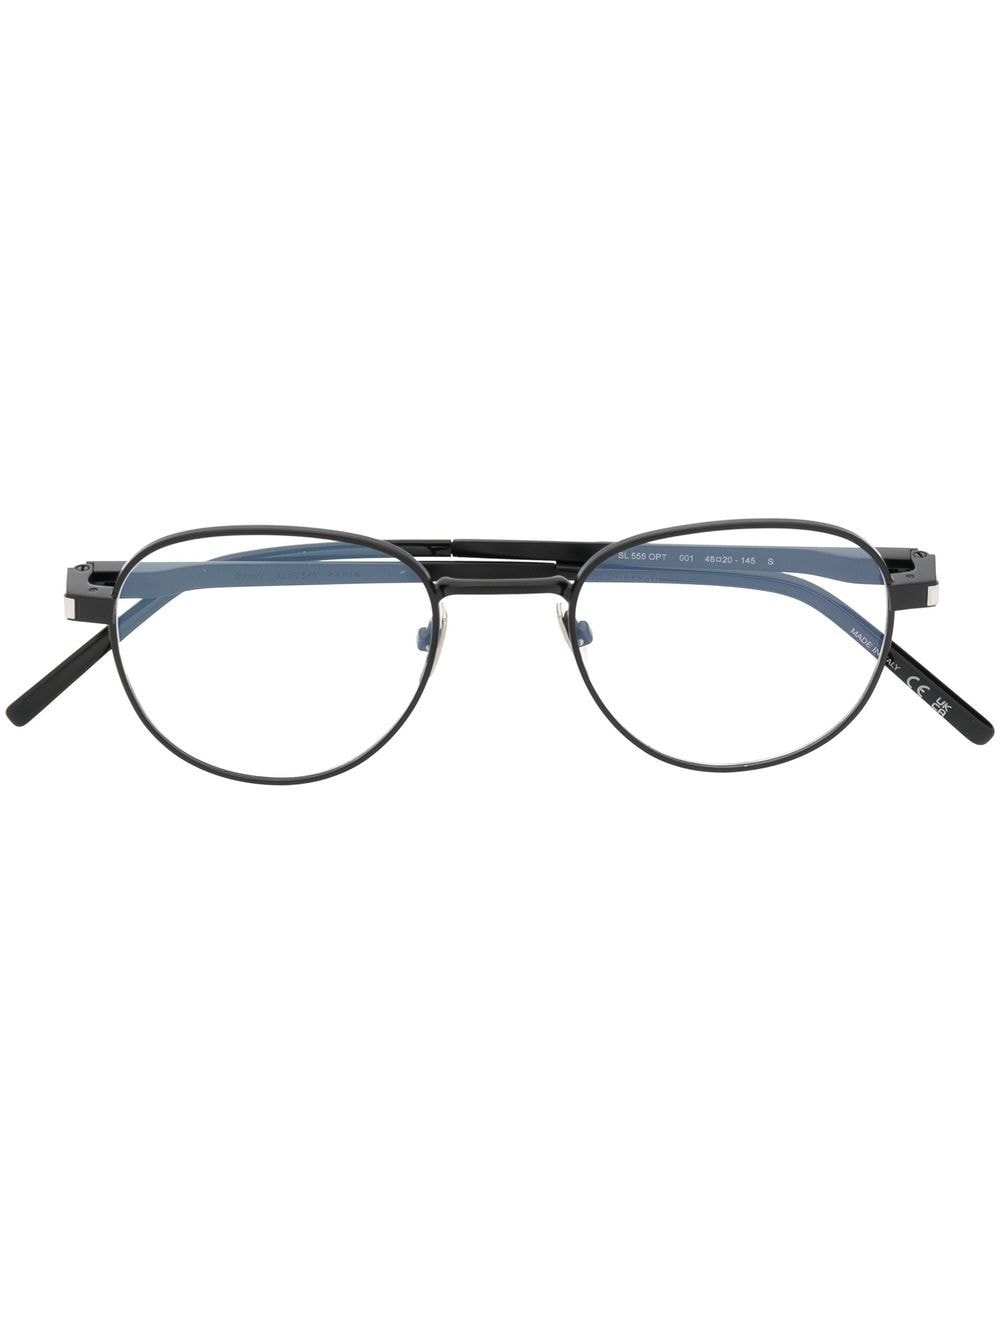 Saint Laurent Eyewear Brille mit rundem Gestell - Schwarz von Saint Laurent Eyewear